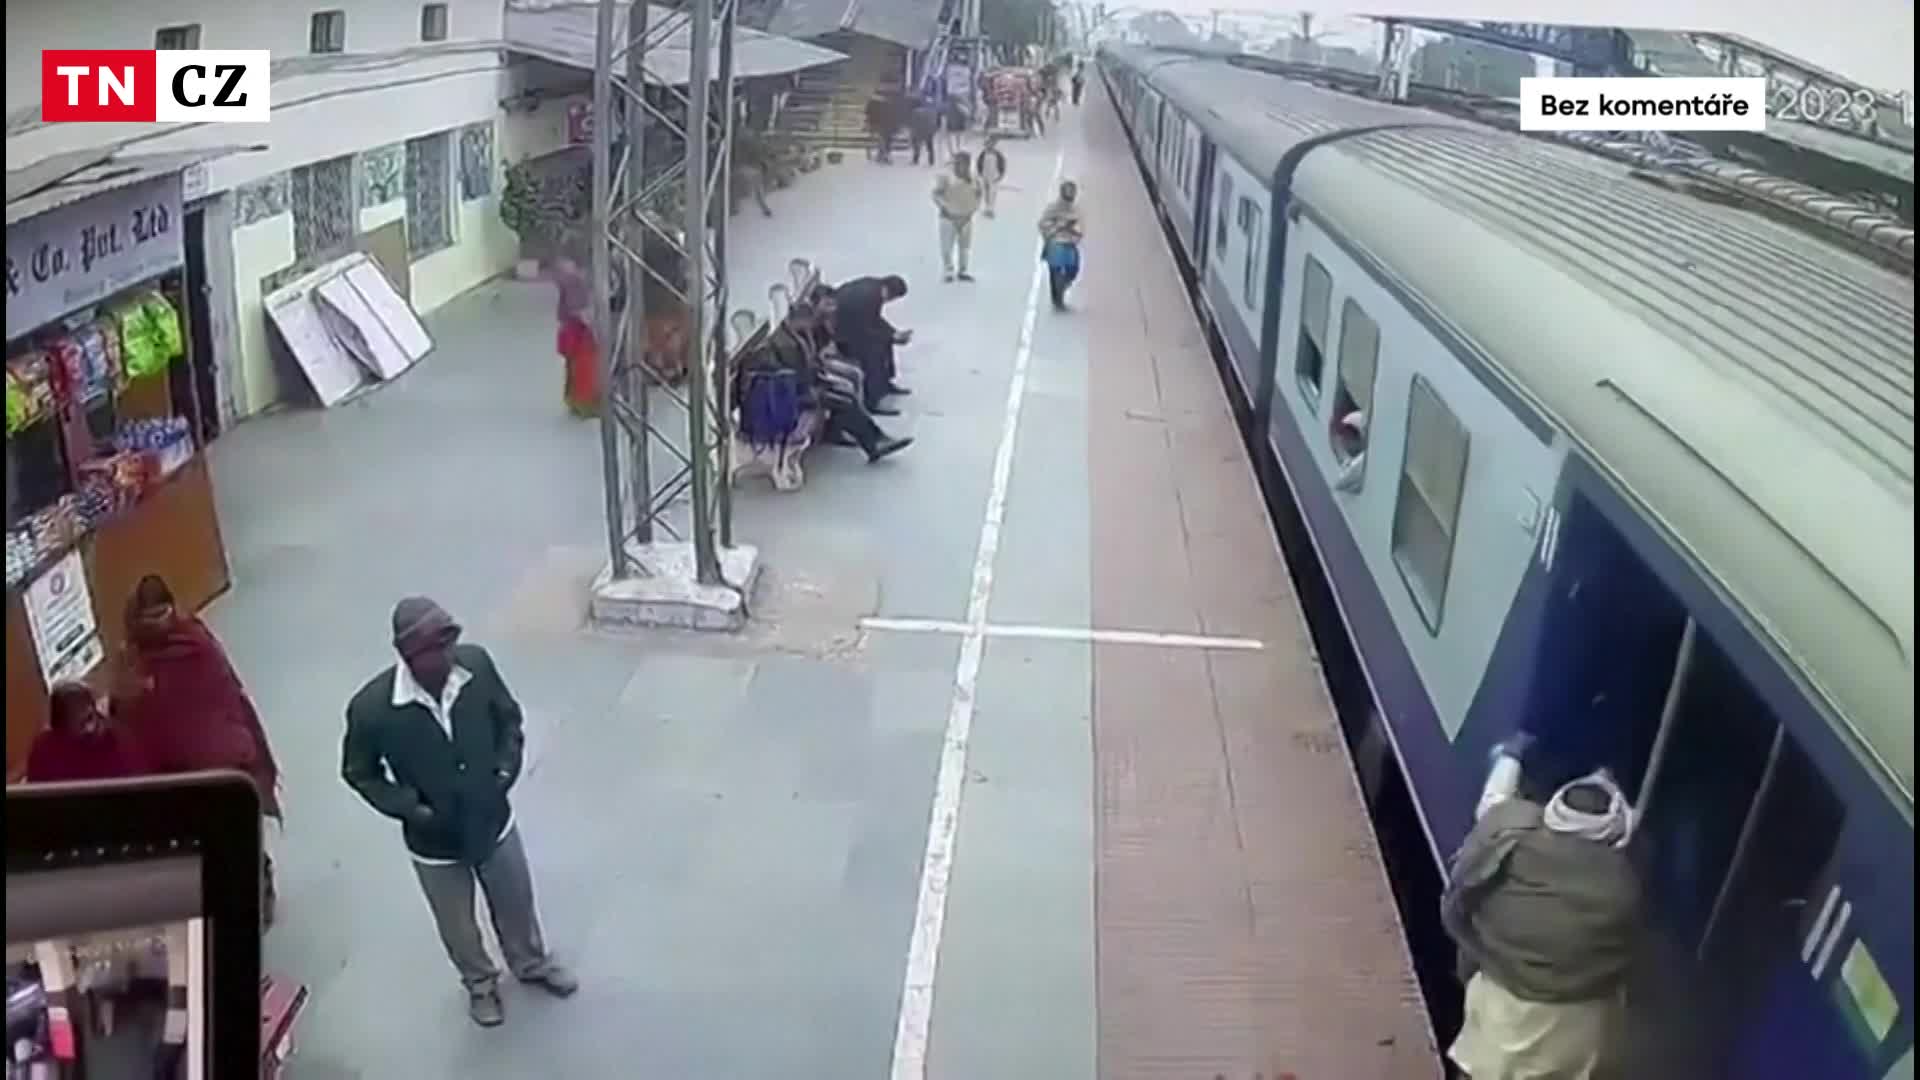 Cestující při nástupu do vlaku klopýtl. Ten ho pak táhl několik metrů